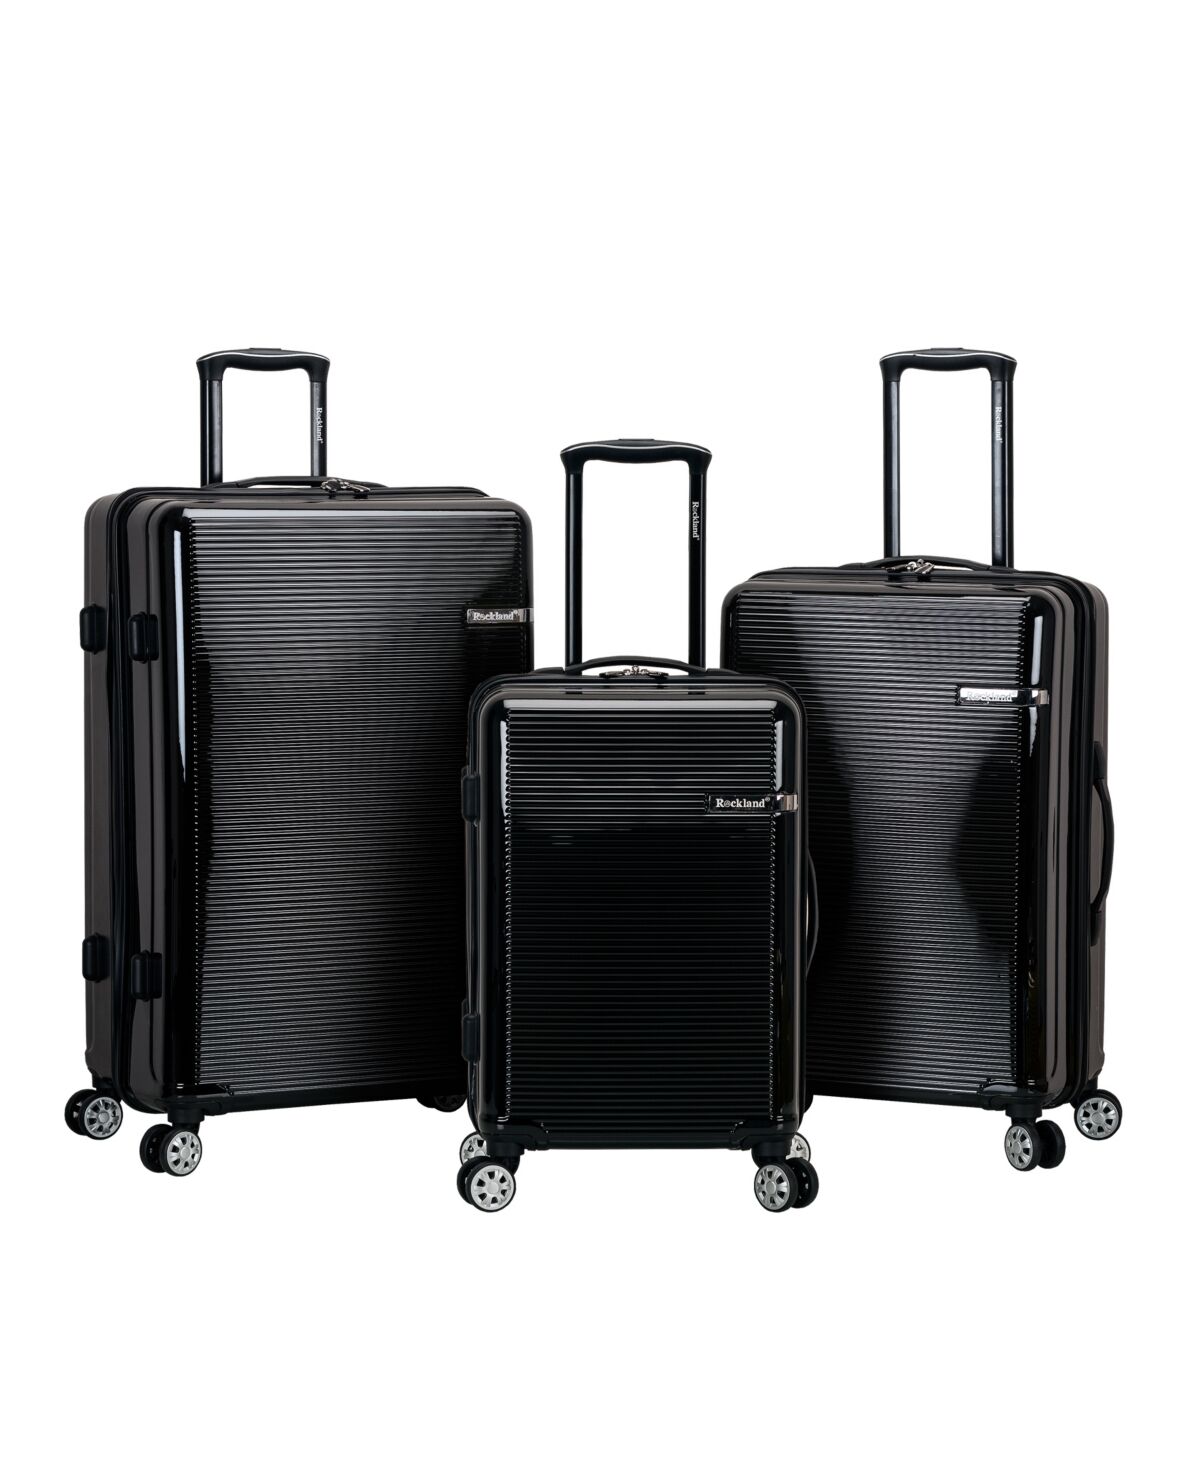 Rockland Horizon 3-Pc. Hardside Luggage Set - Black